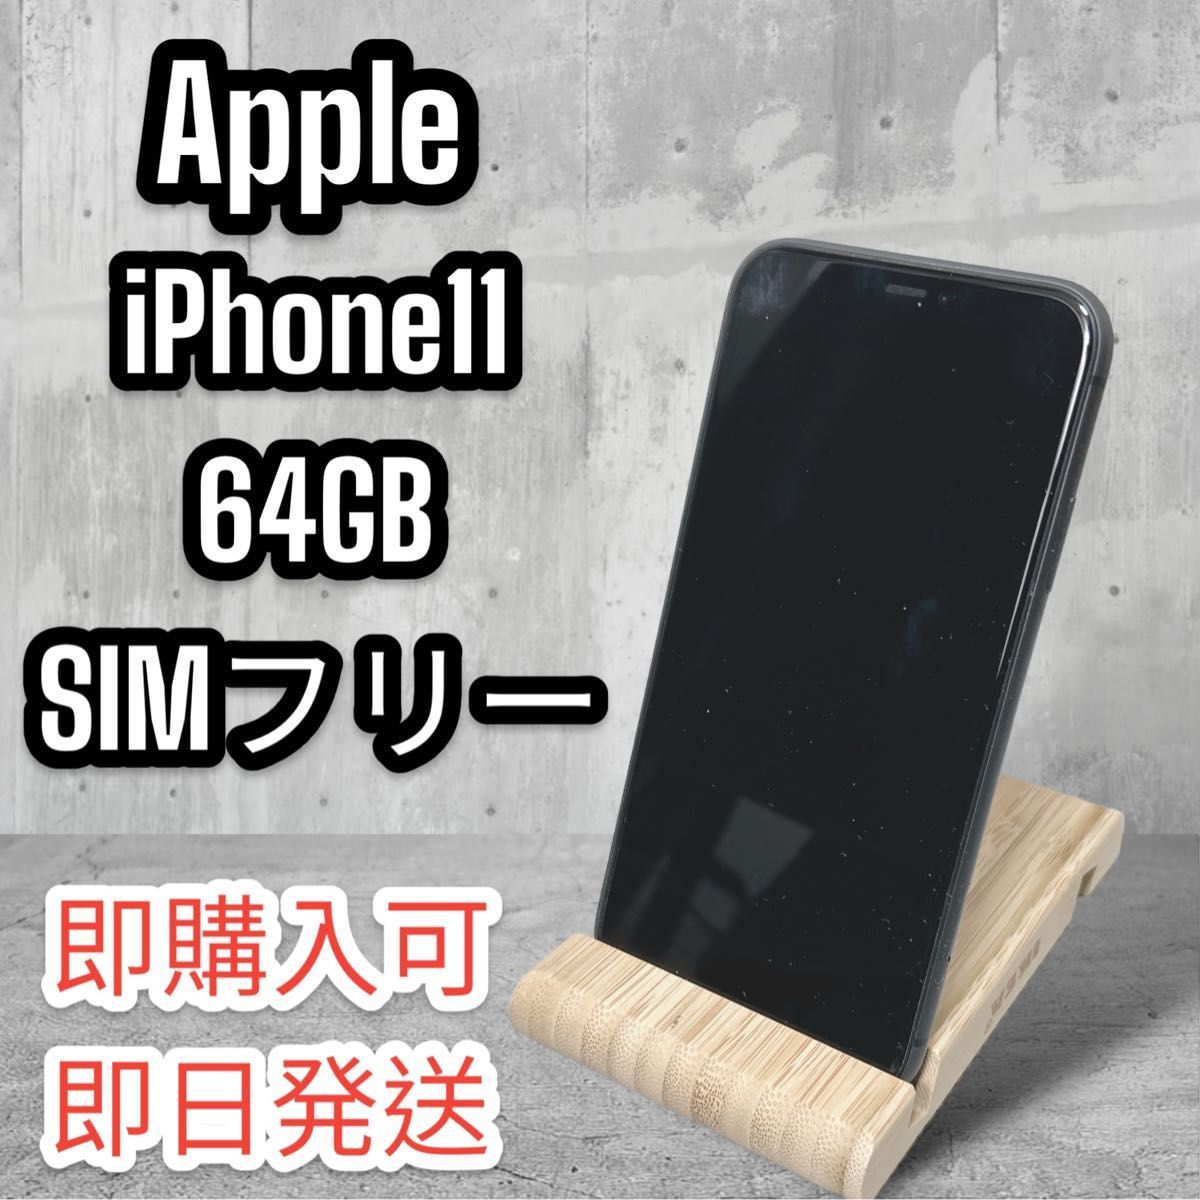 激安正規 【美品】Apple iPhone11 64GB SIMフリー iPhone - www